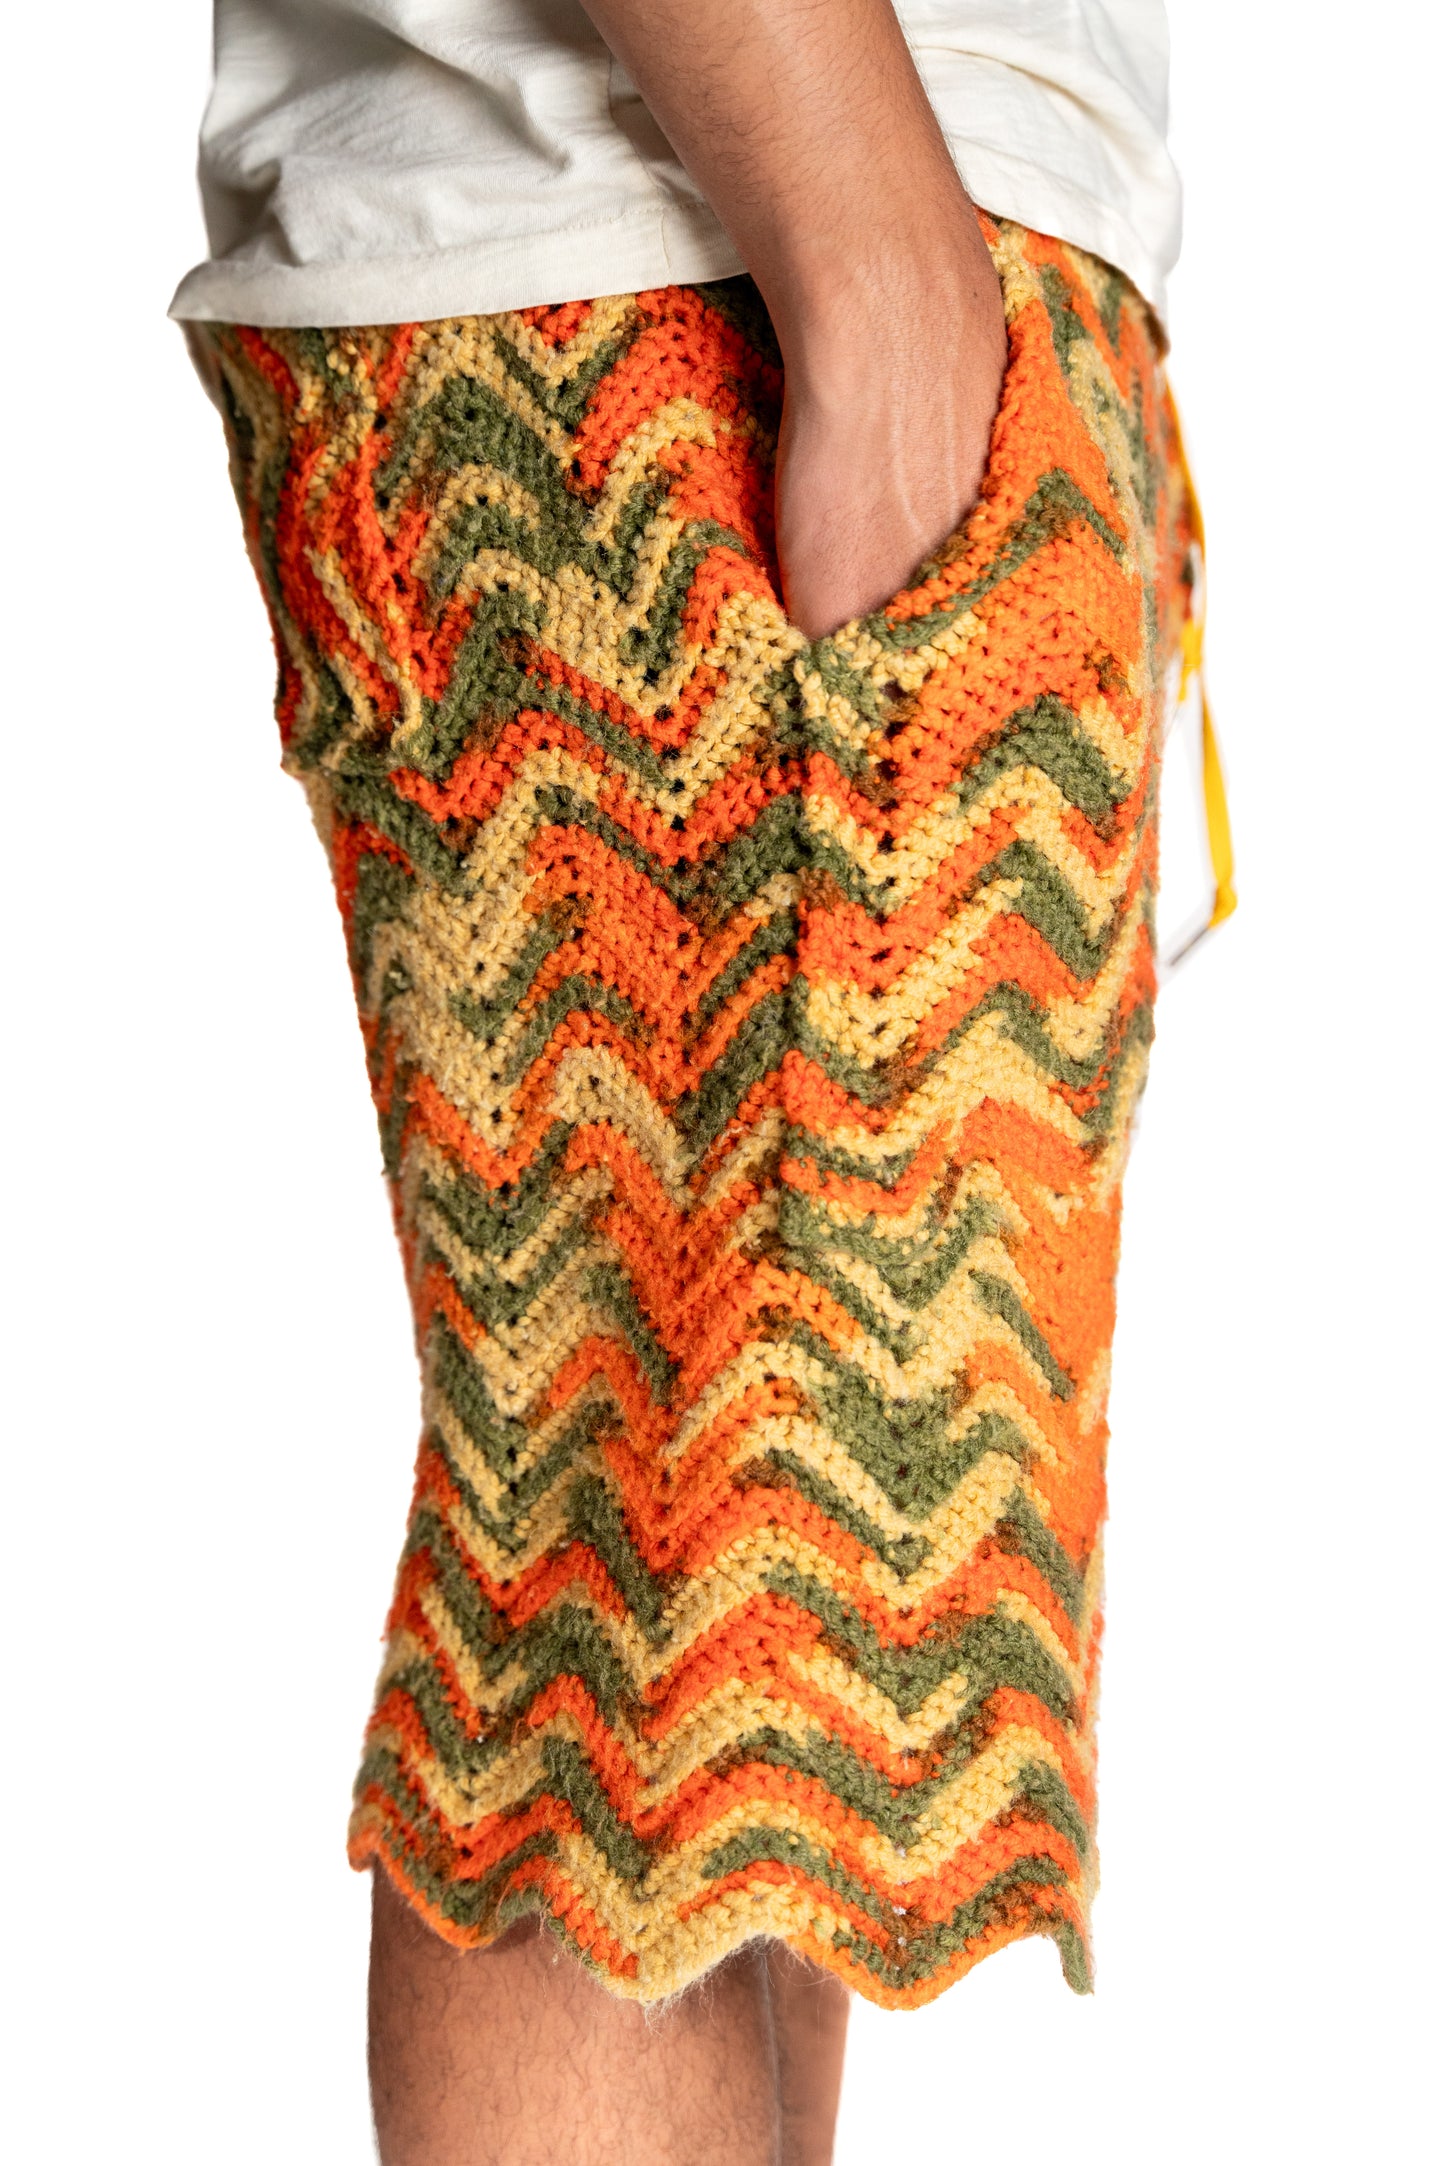 Afgan Knitted Shorts (tahoe)